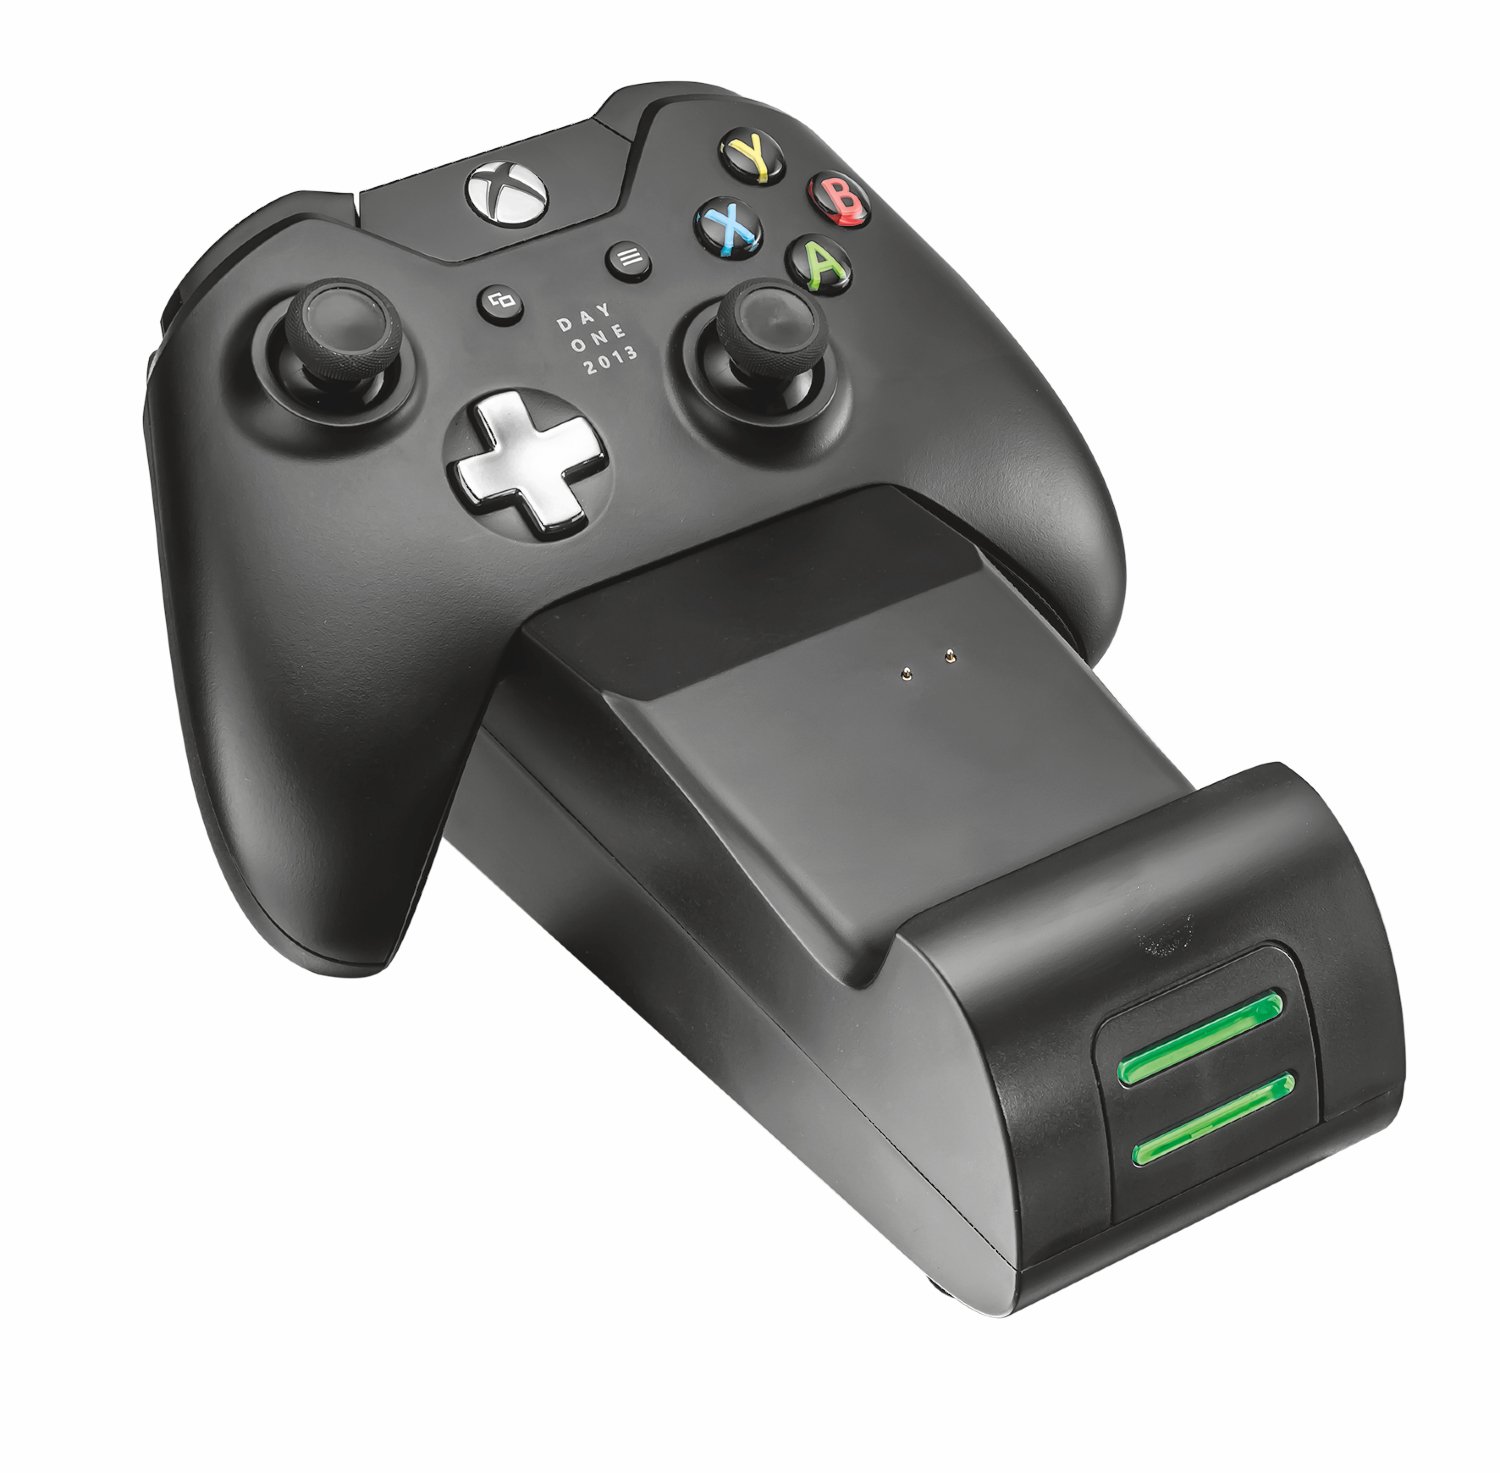 Base de carga Trust doble para mandos de Xbox solo 12€